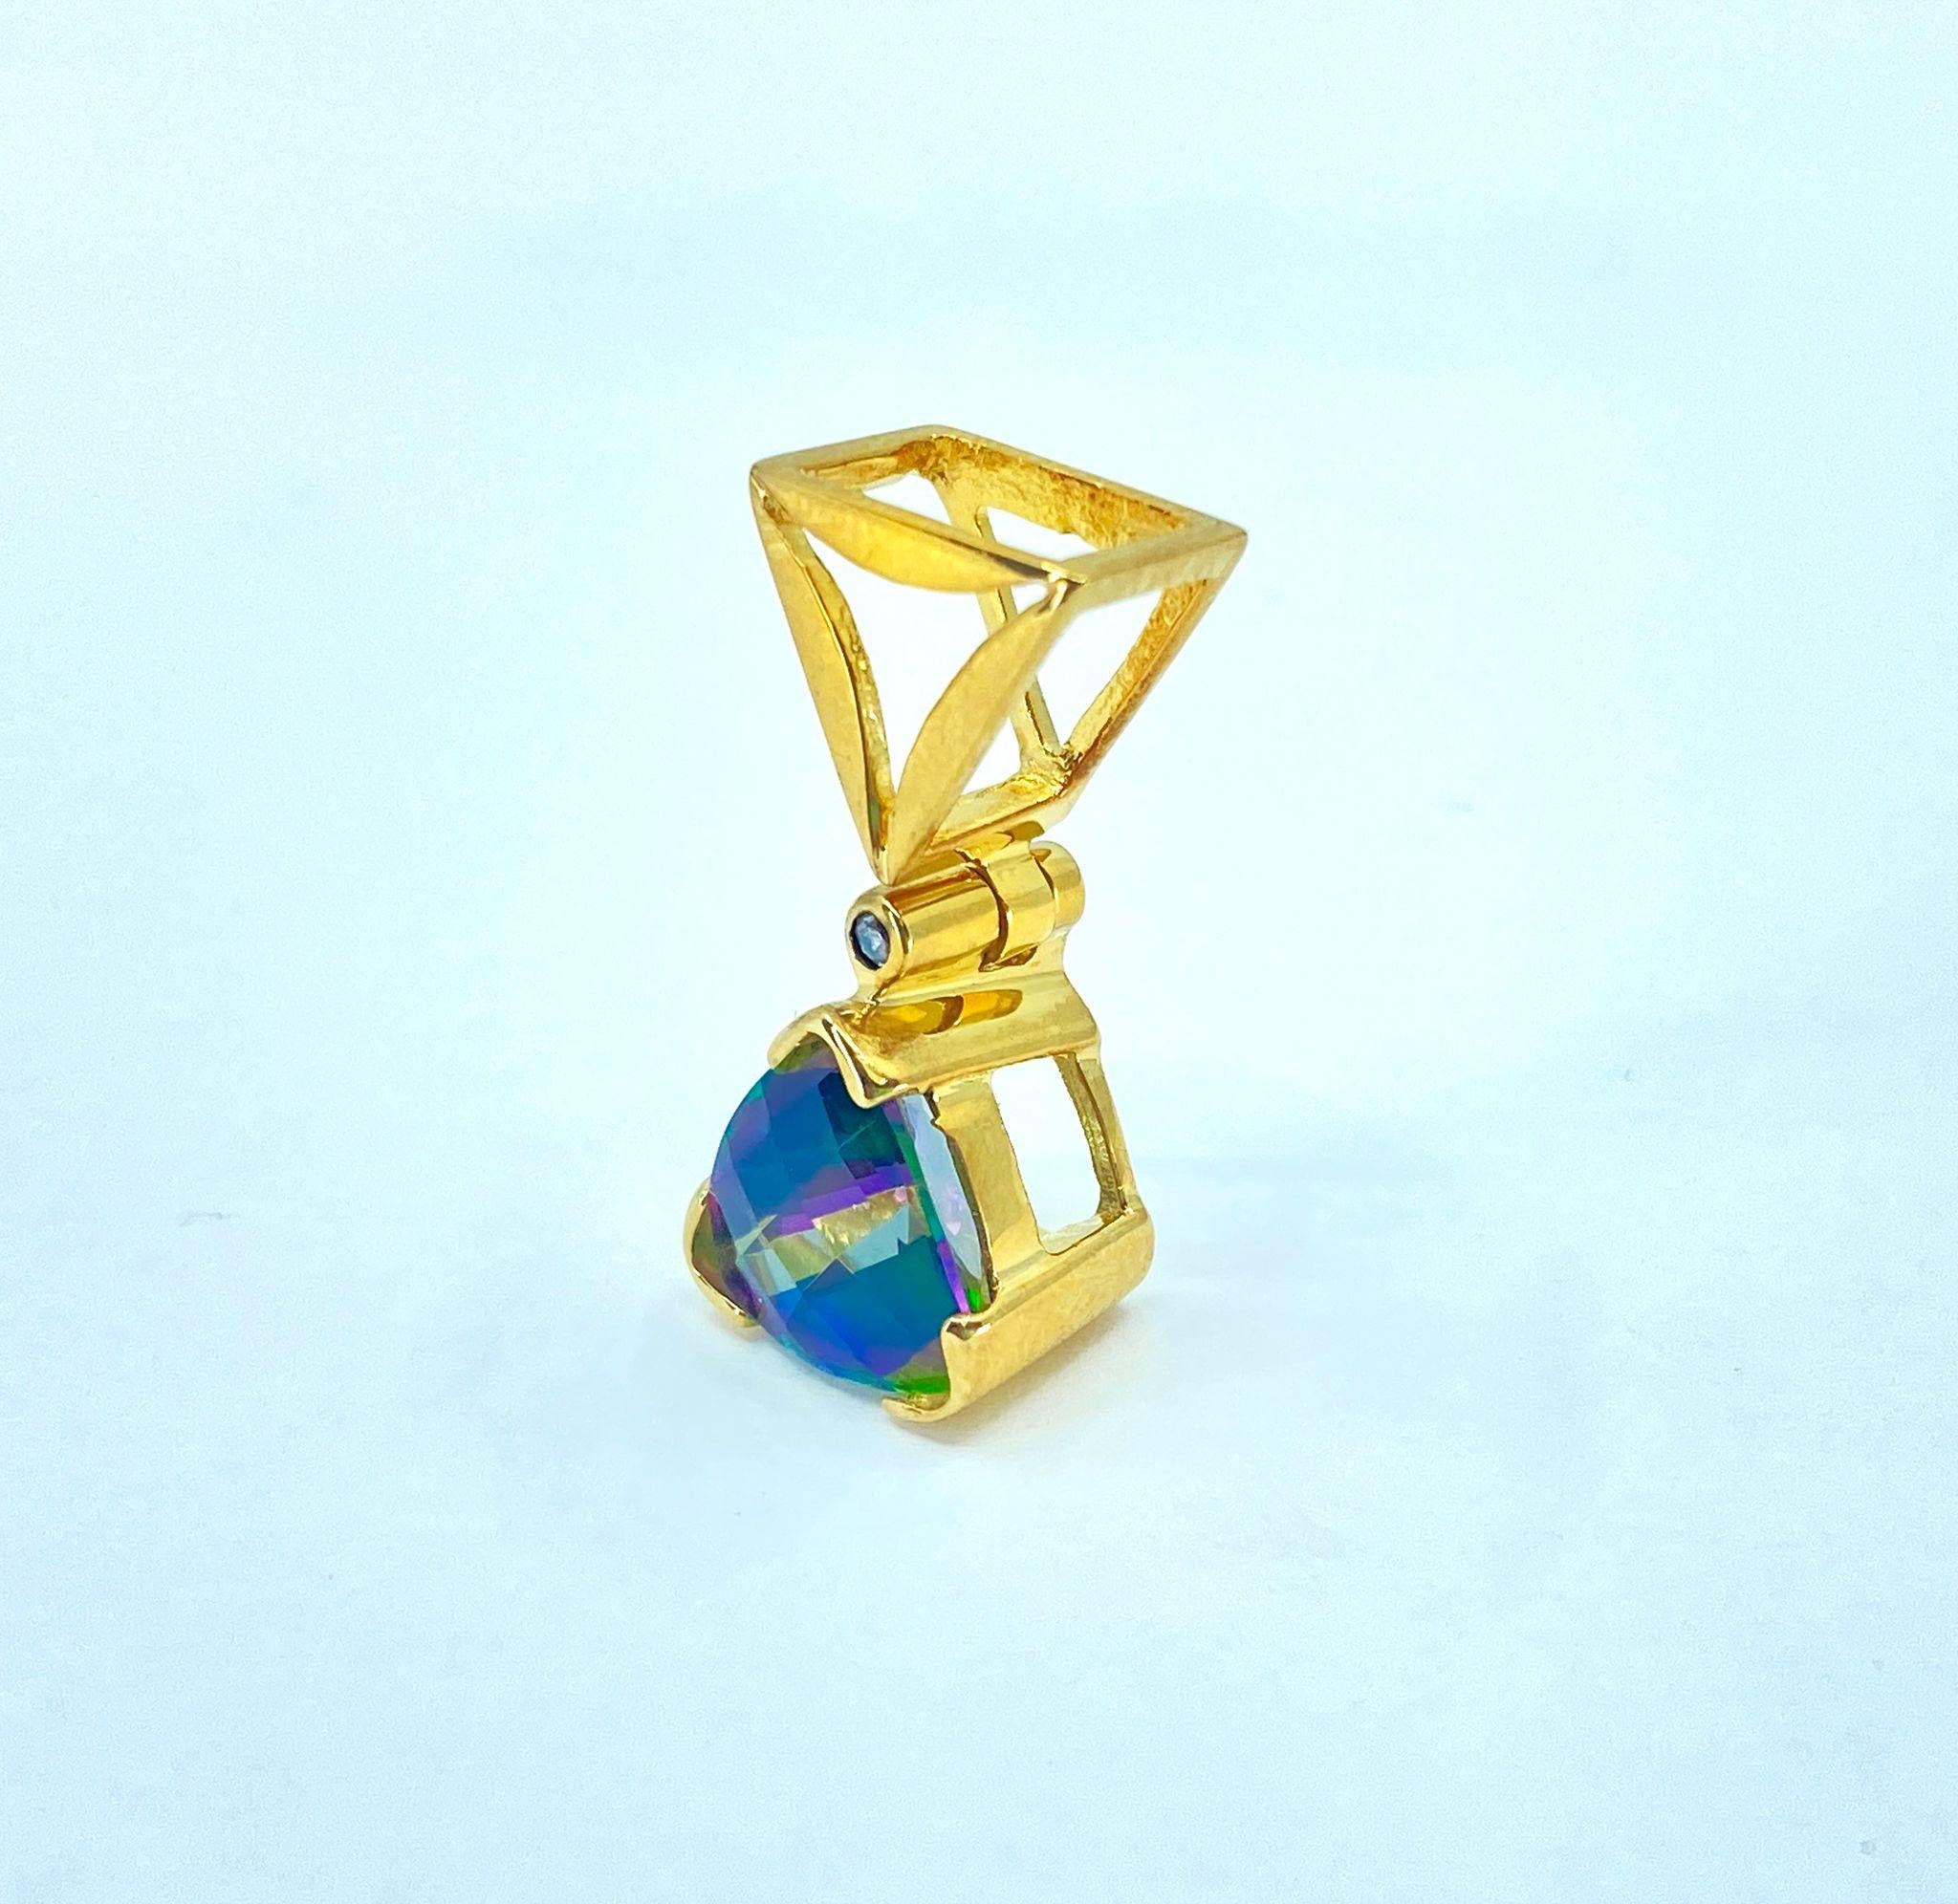 Dieser atemberaubende Anhänger ist aus luxuriösem 14-karätigem Gelbgold gefertigt und besticht durch einen 3-karätigen mystischen Topas mit einem faszinierenden blau-grünen Farbton. Ein Solitär-Diamant in VS-Klarheit und F-Farbe, der für